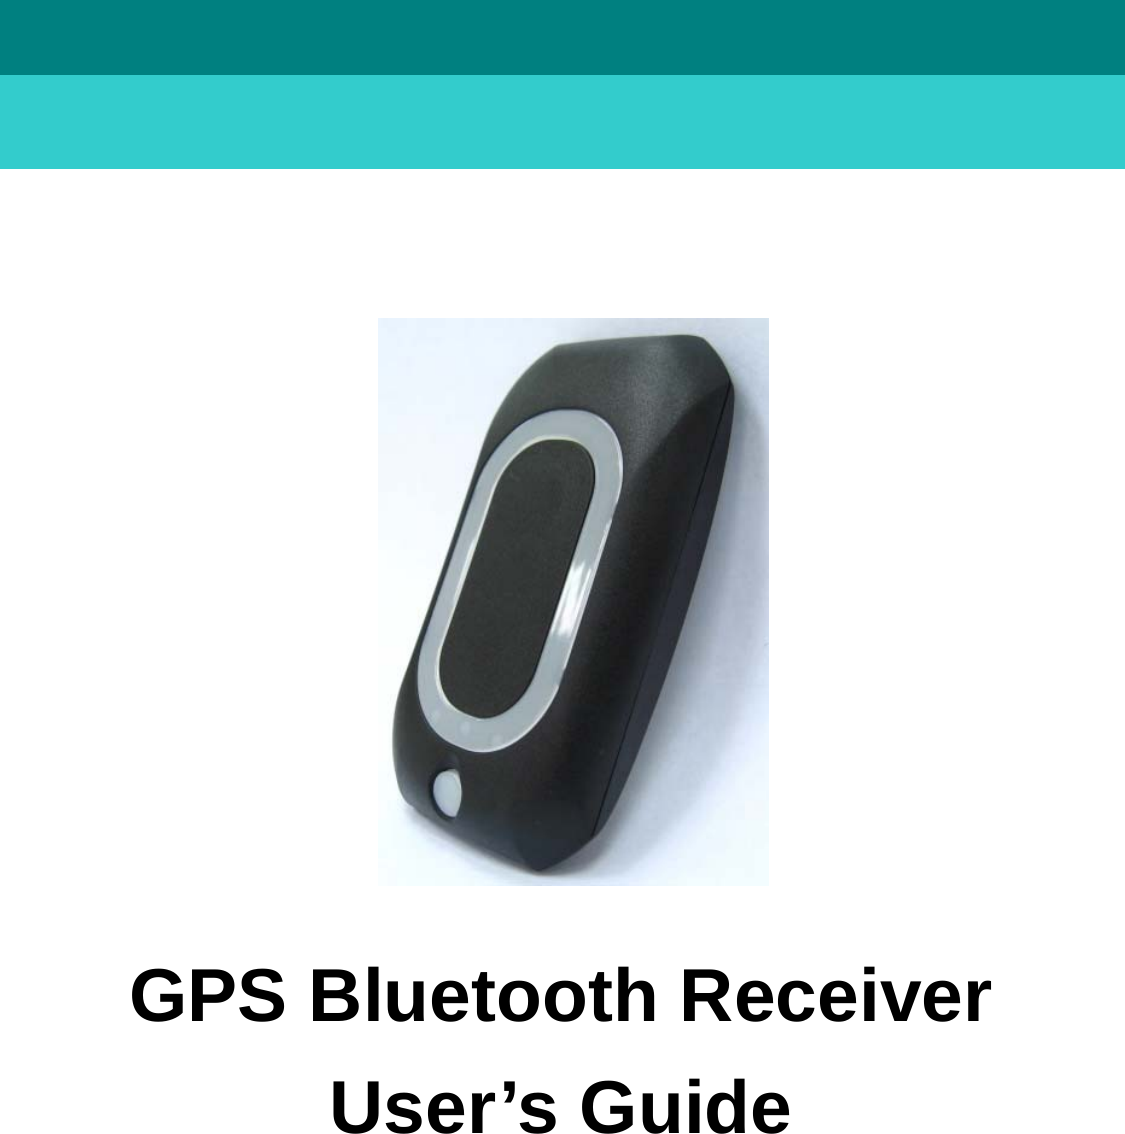      User’s GuideGPS Bluetooth Receiver                     GPS Bluetooth Receiver User’s Guide            